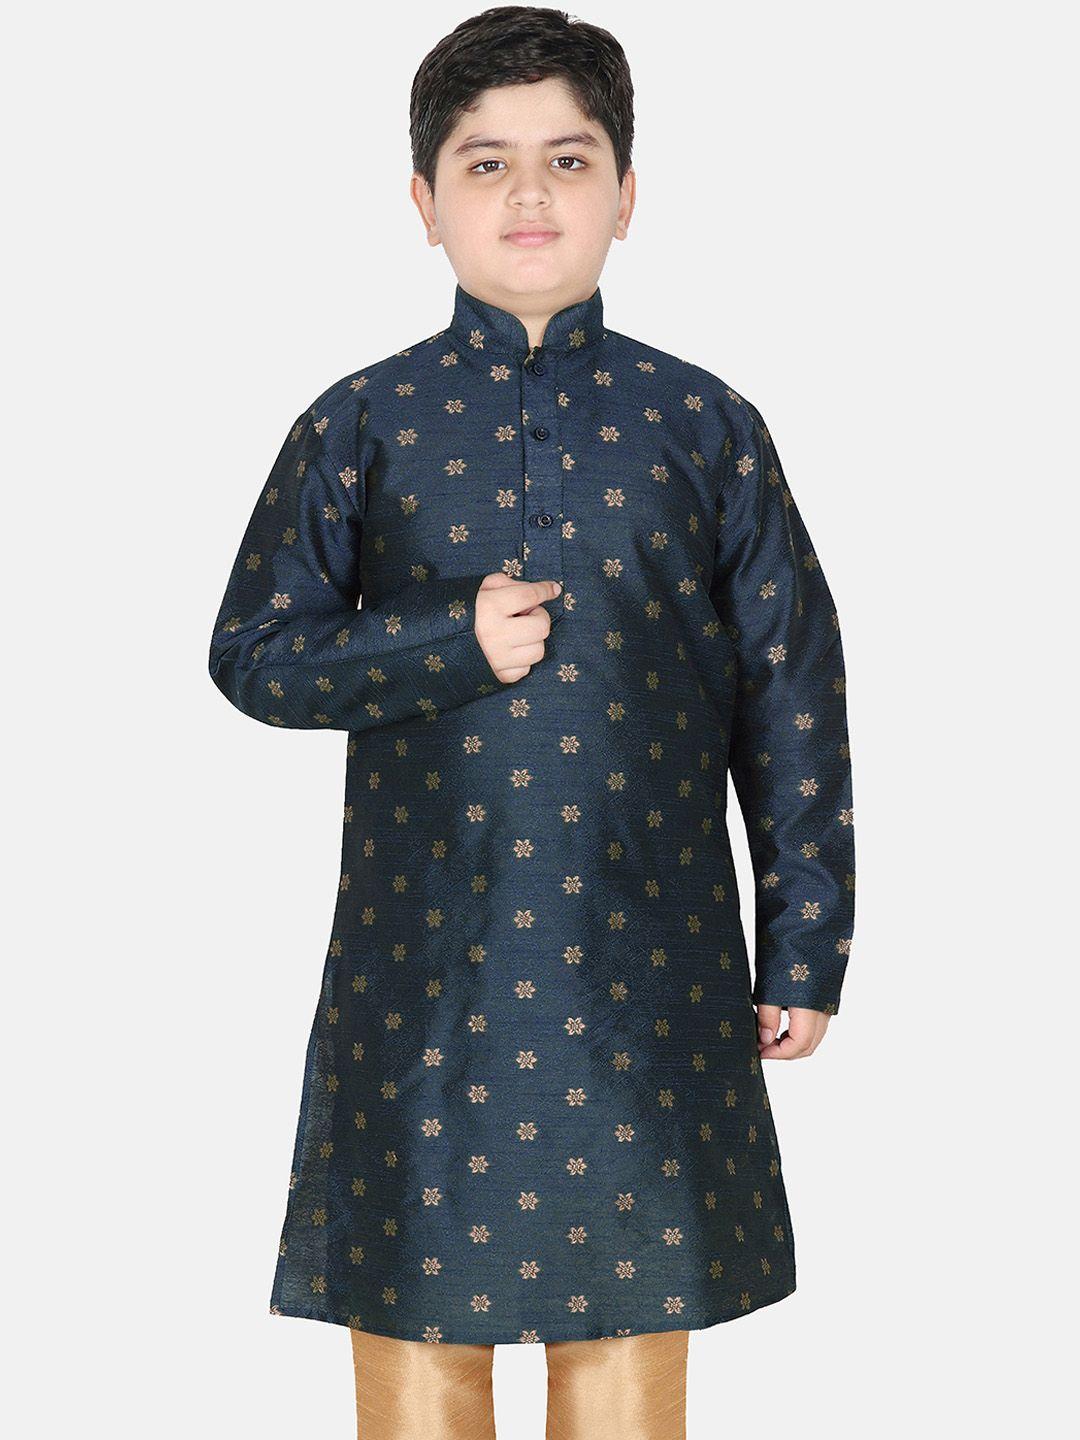 sg yuvraj boys ethnic motifs woven design indigo jacquard kurta